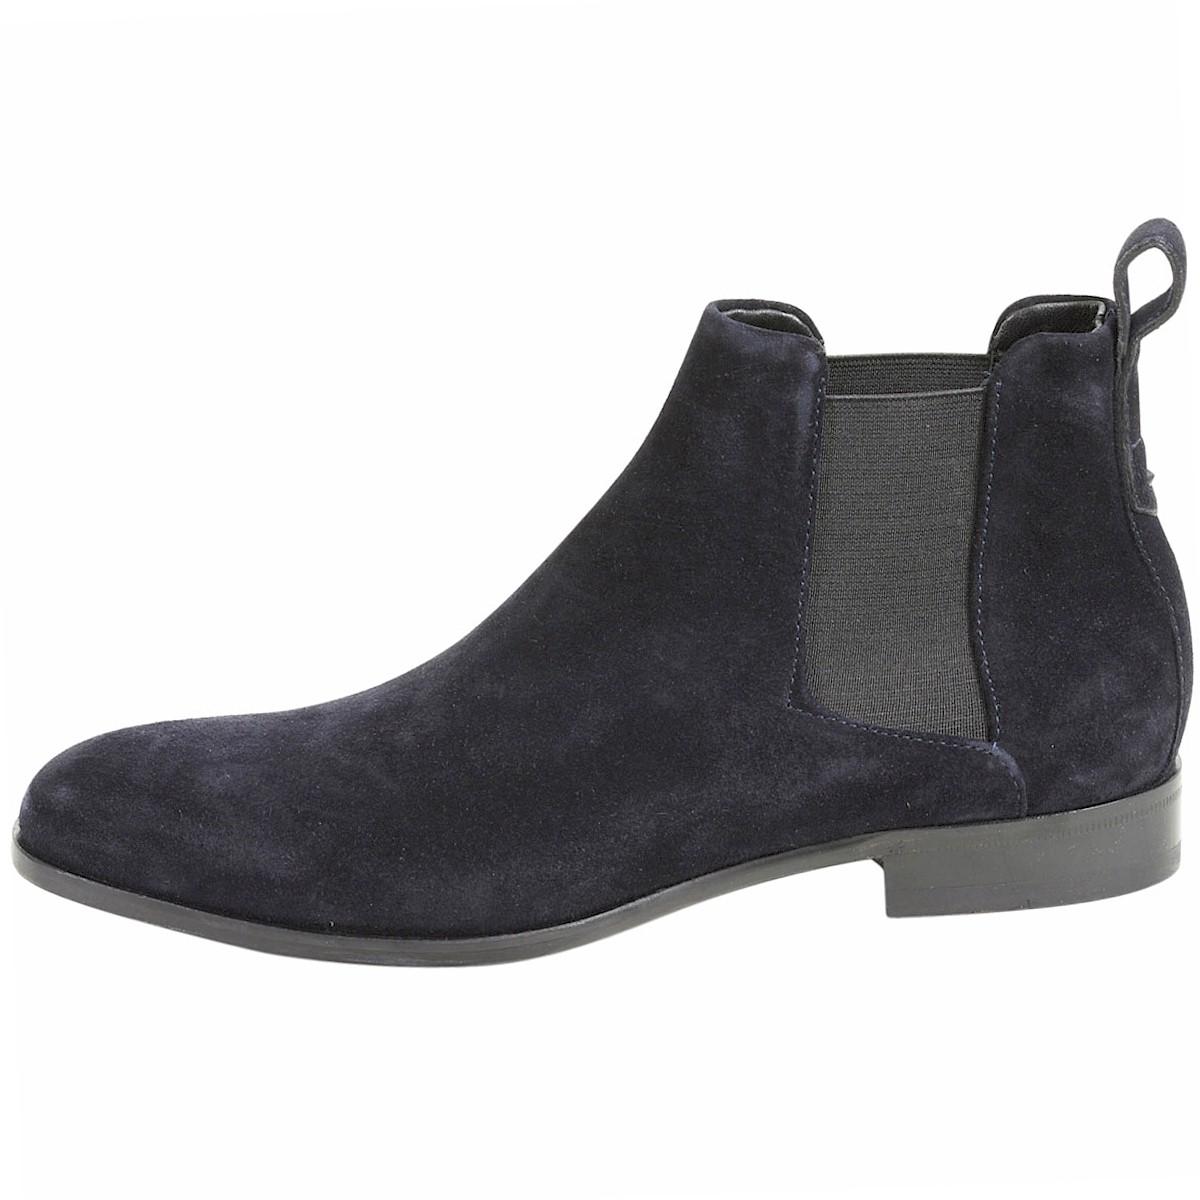 Hugo Boss Men's Cult Suede Leather Chelsea Boots Shoes | JoyLot.com